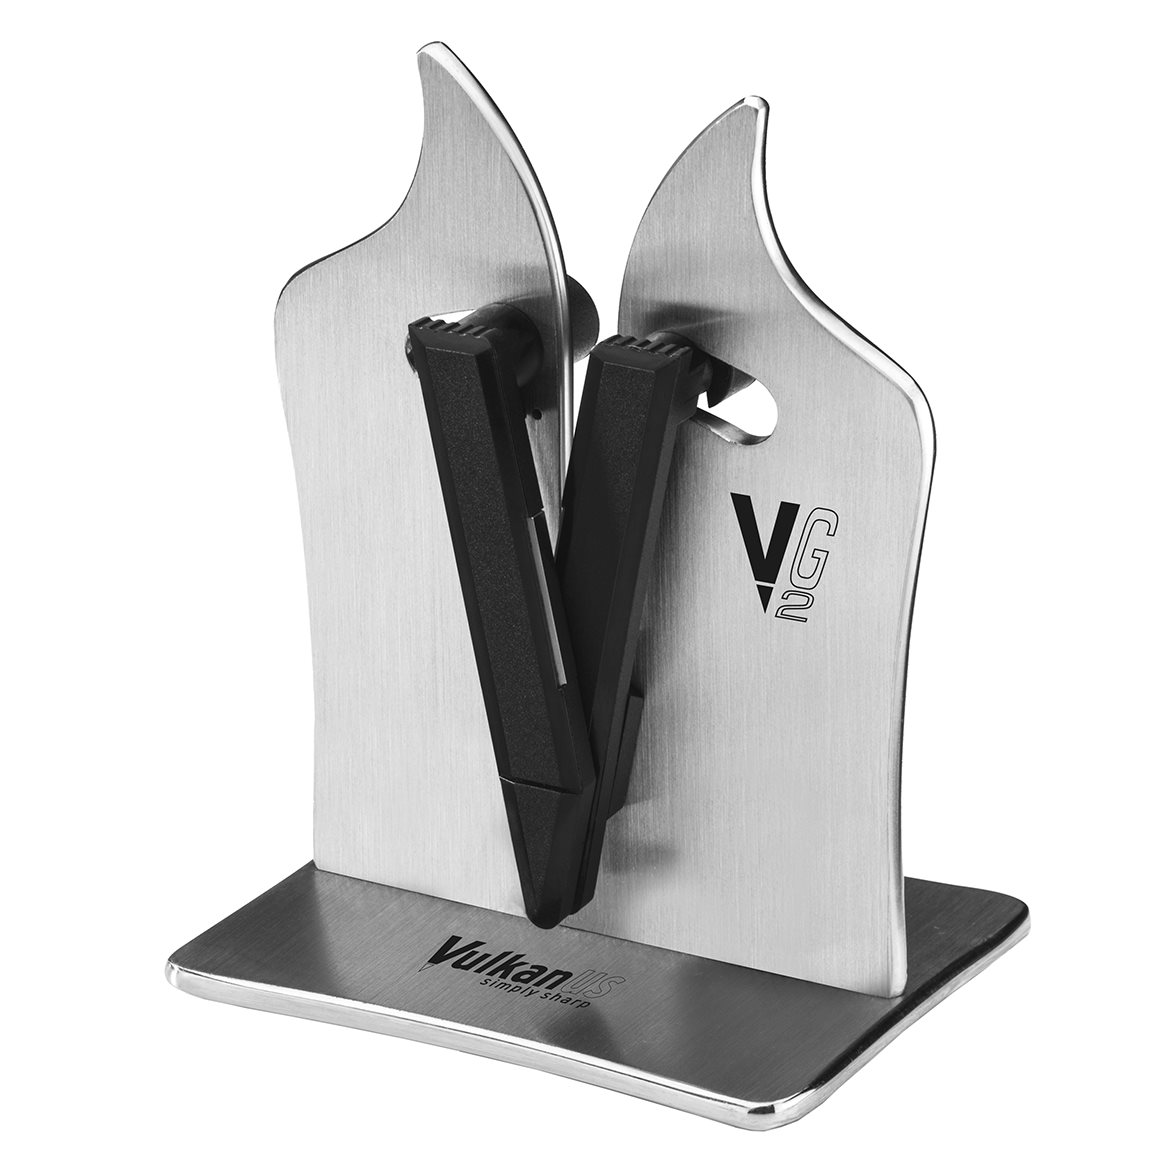 https://api-prod.royaldesign.se/api/products/image/2/vulkanus-vulkanus-vg2-professional-knife-sharpener-0